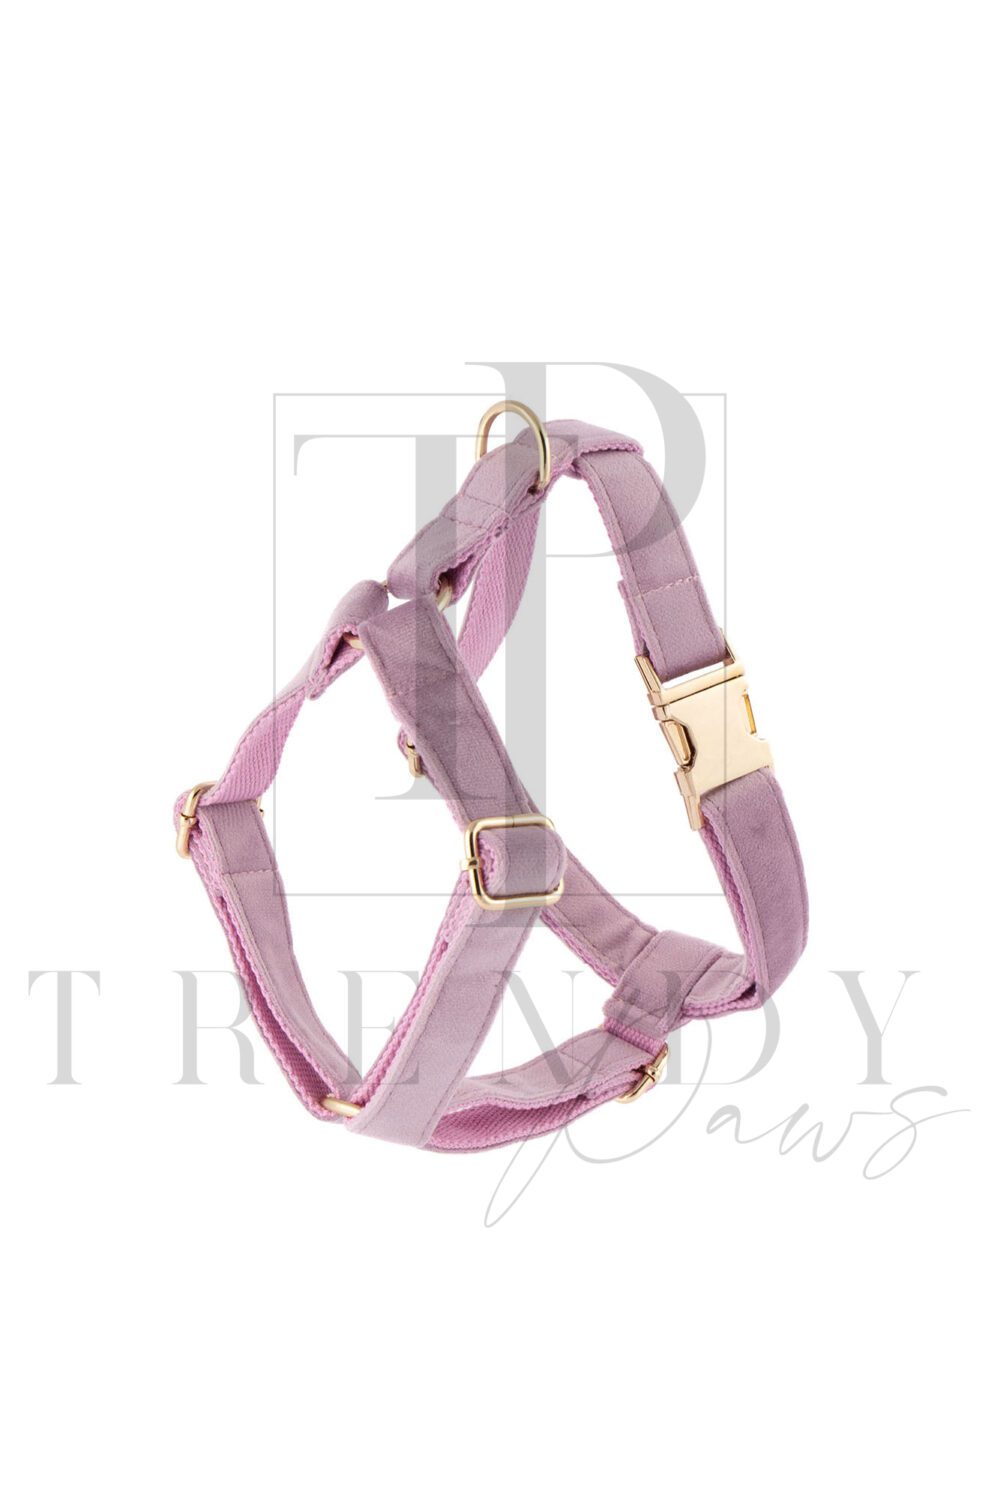 Lavender velvet soft dog harnesses harness